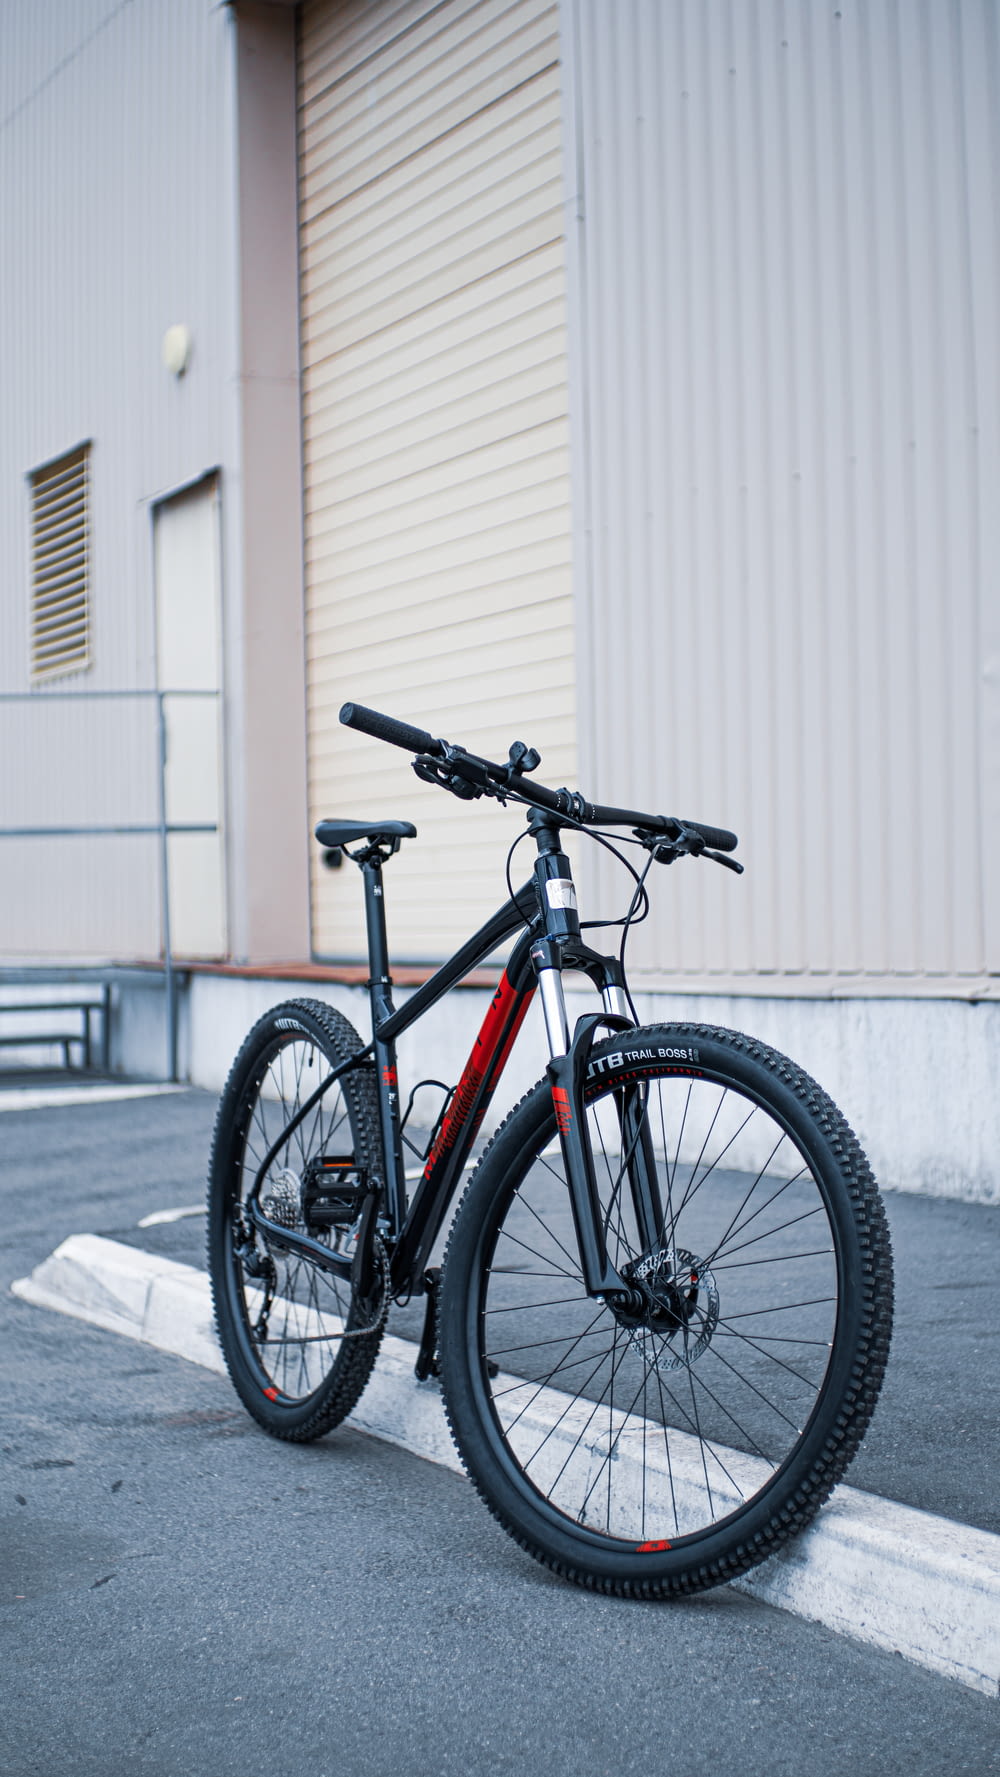 검은 색과 주황색 도로 자전거가 흰 벽 옆에 주차